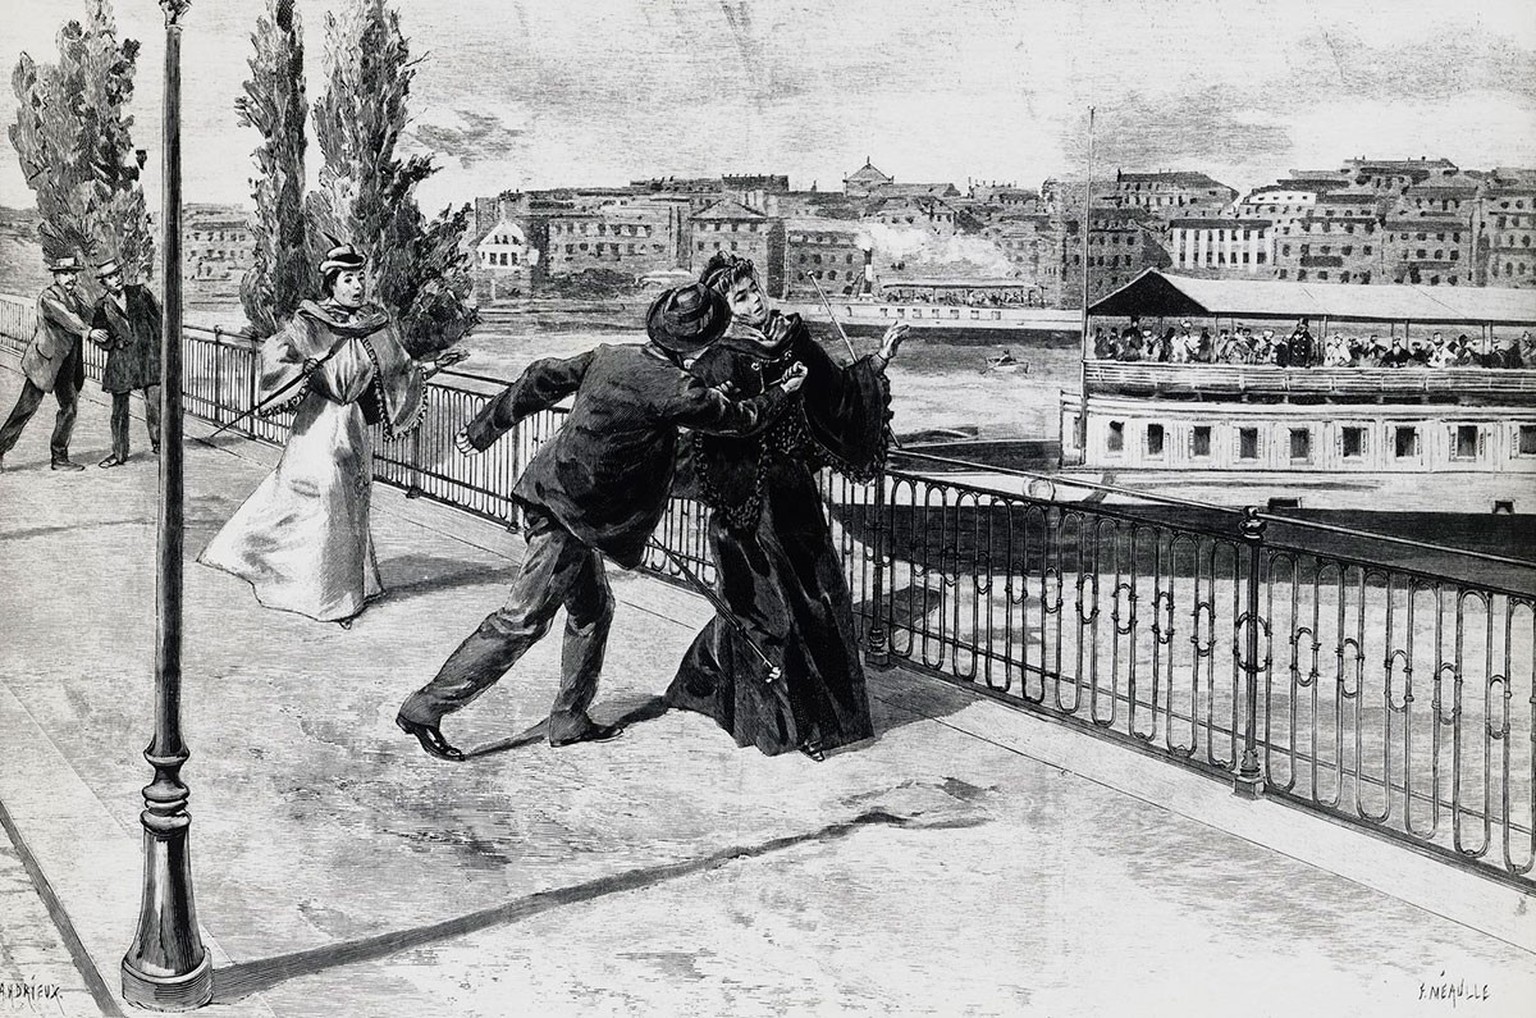 L&#039;assassinat de Sisi à Genève en 1898 a bouleversé le monde.
https://commons.wikimedia.org/wiki/File:Assassinato_luigi.jpg